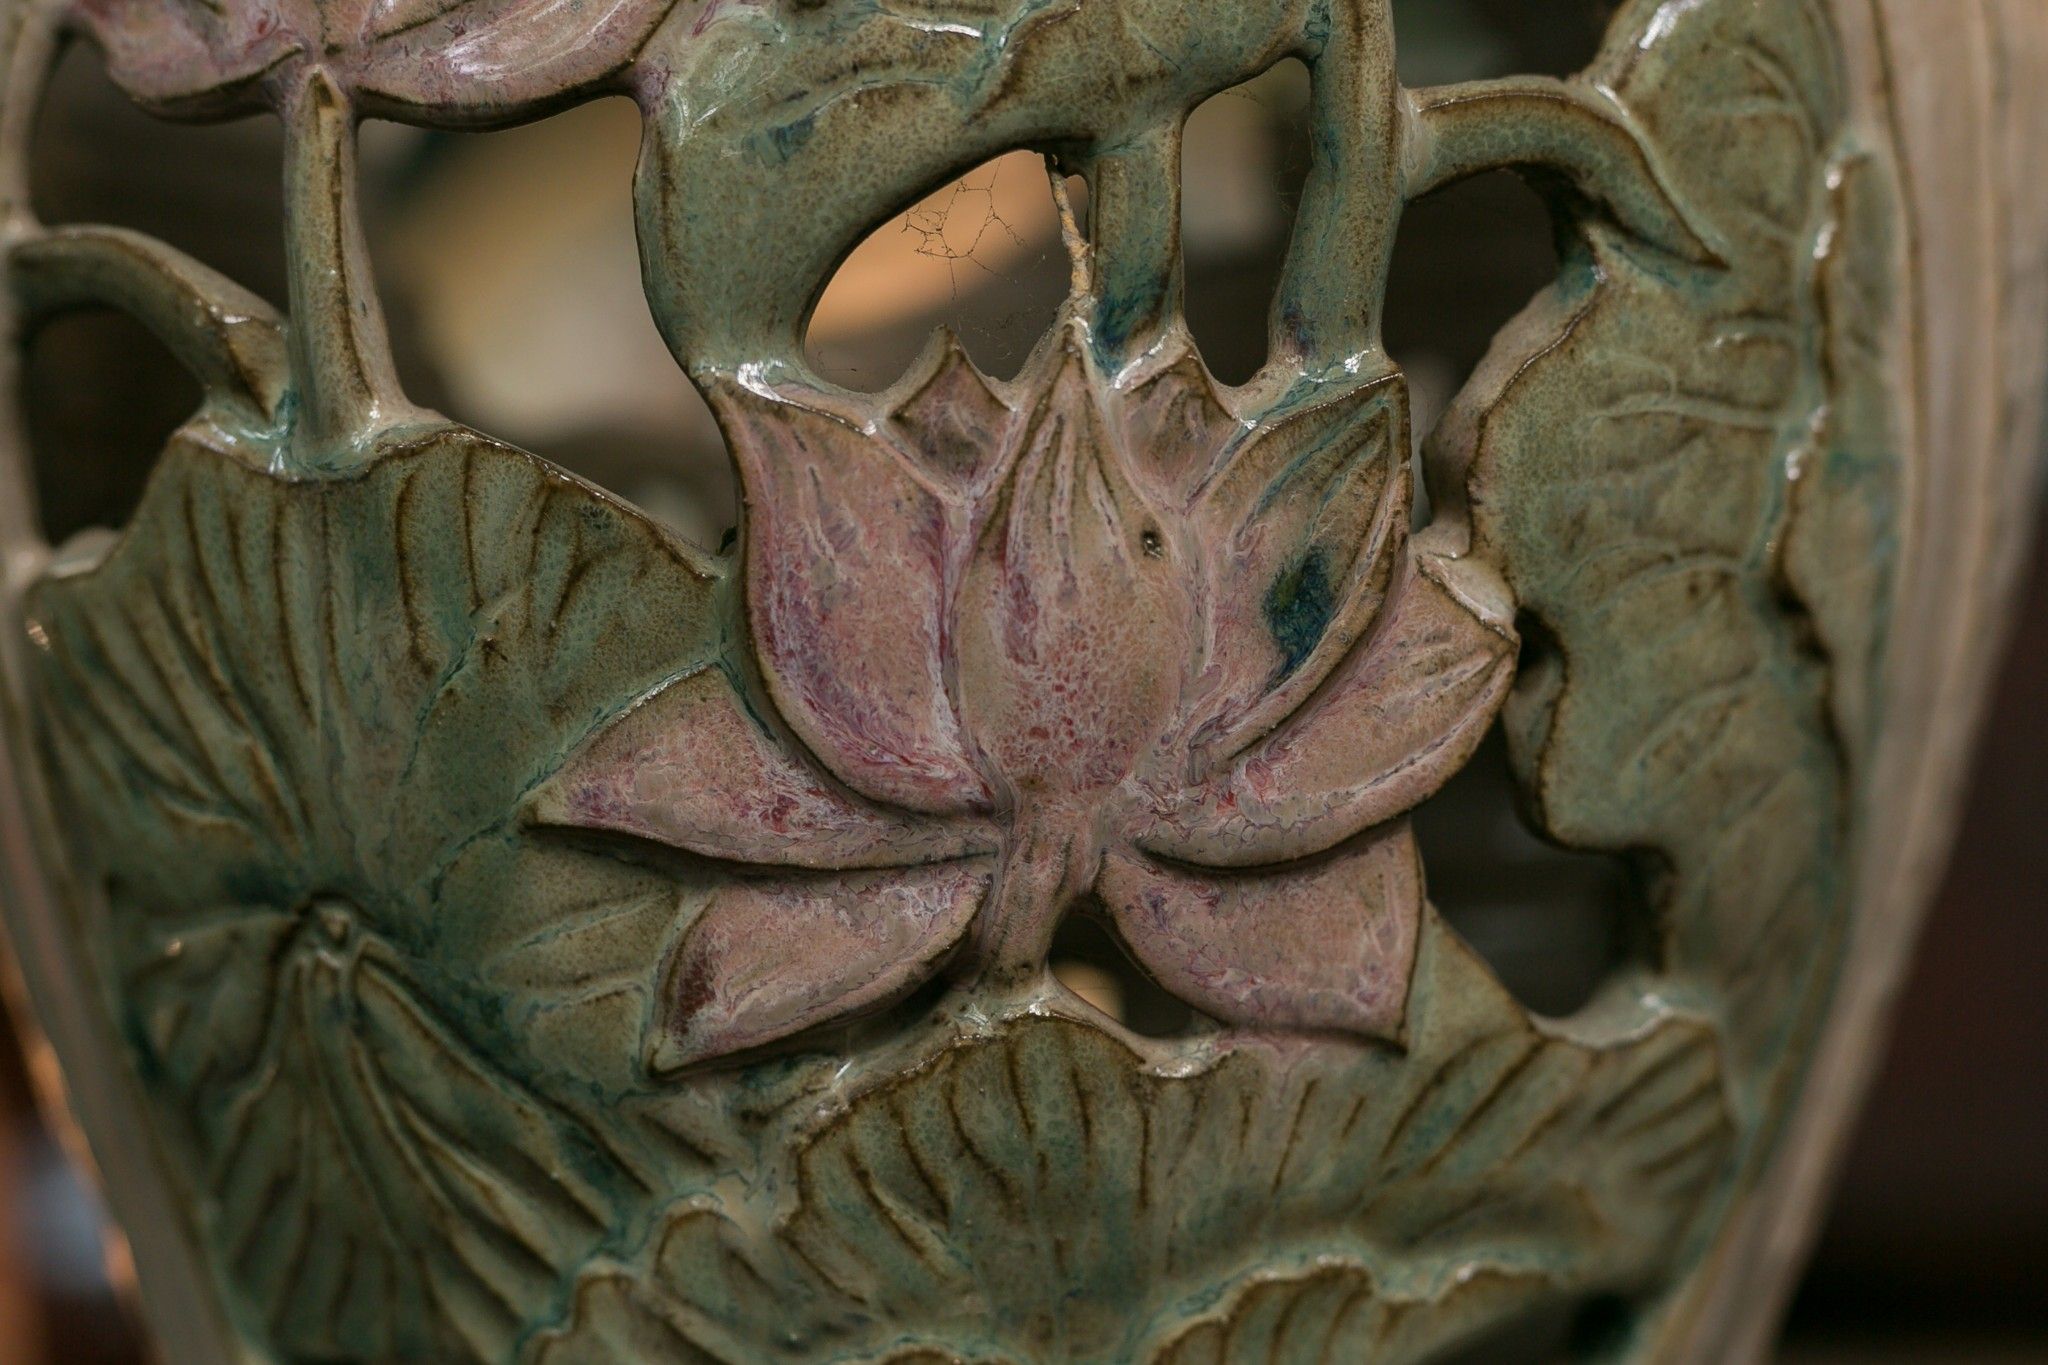  Bình vuốt tay chạm lọng theo chủ đề chim muông, hoa lá, gốm thủ công Nam Bộ, H30 cm 